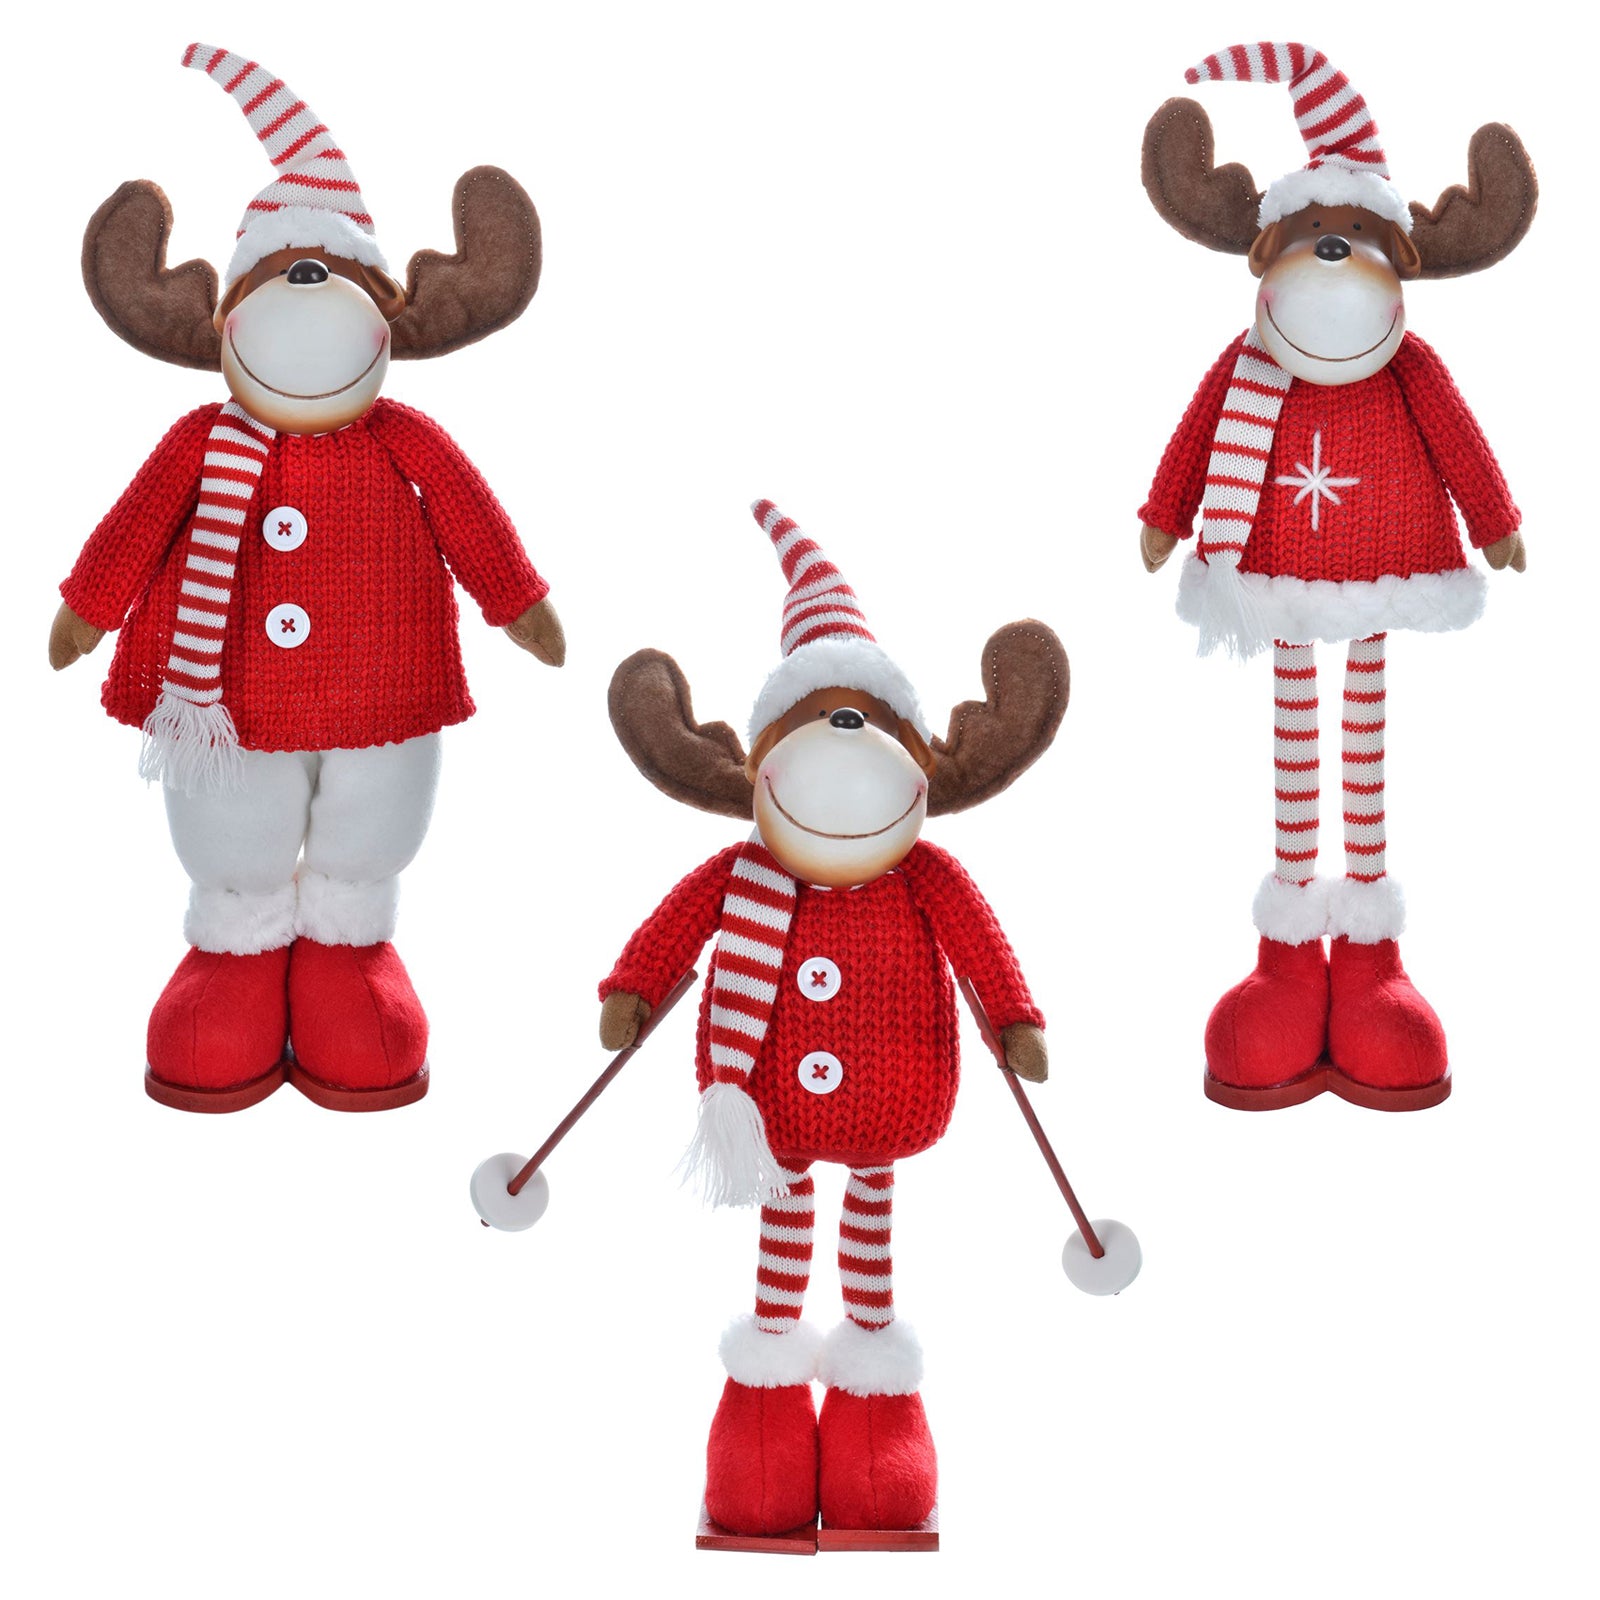 Mr Crimbo Plush Reindeer Figure Novelty Decoration Red White - MrCrimbo.co.uk